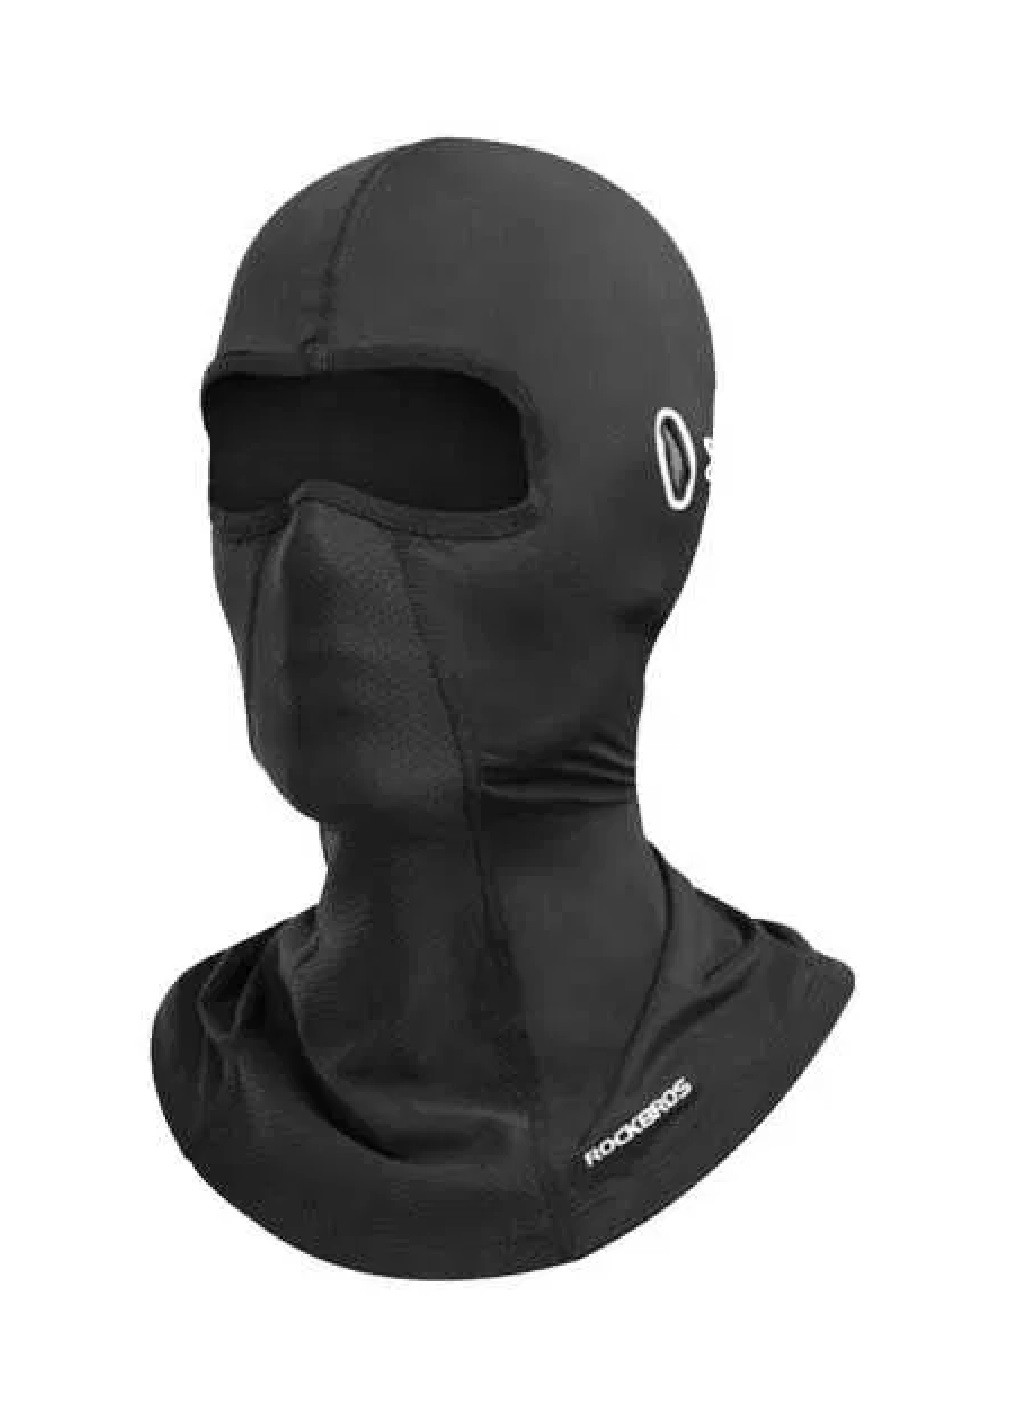 Unbranded тонкая летняя легкая ветрозащитная балаклава маска подшлемник на все лицо под шлем вело мото универсальная (474802-prob) однотонный черный кэжуал нейлон производство -